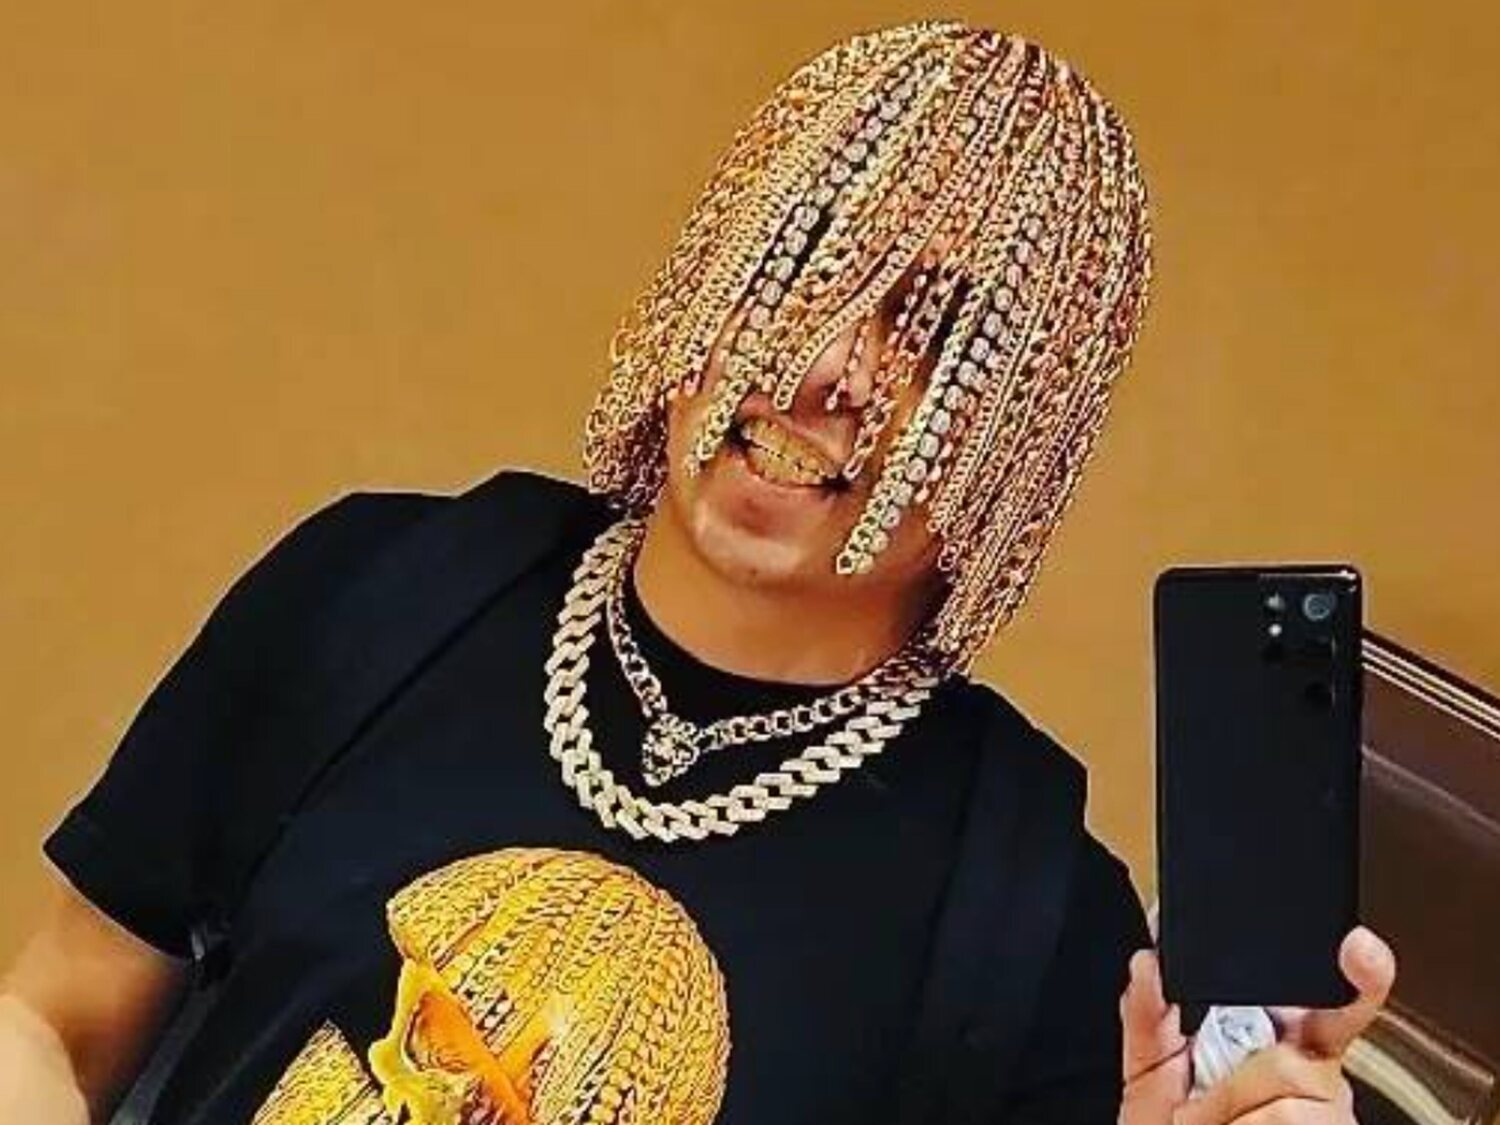 Dan Sur, el rapero que se ha implantado quirúrgicamente cadenas de oro en la cabeza